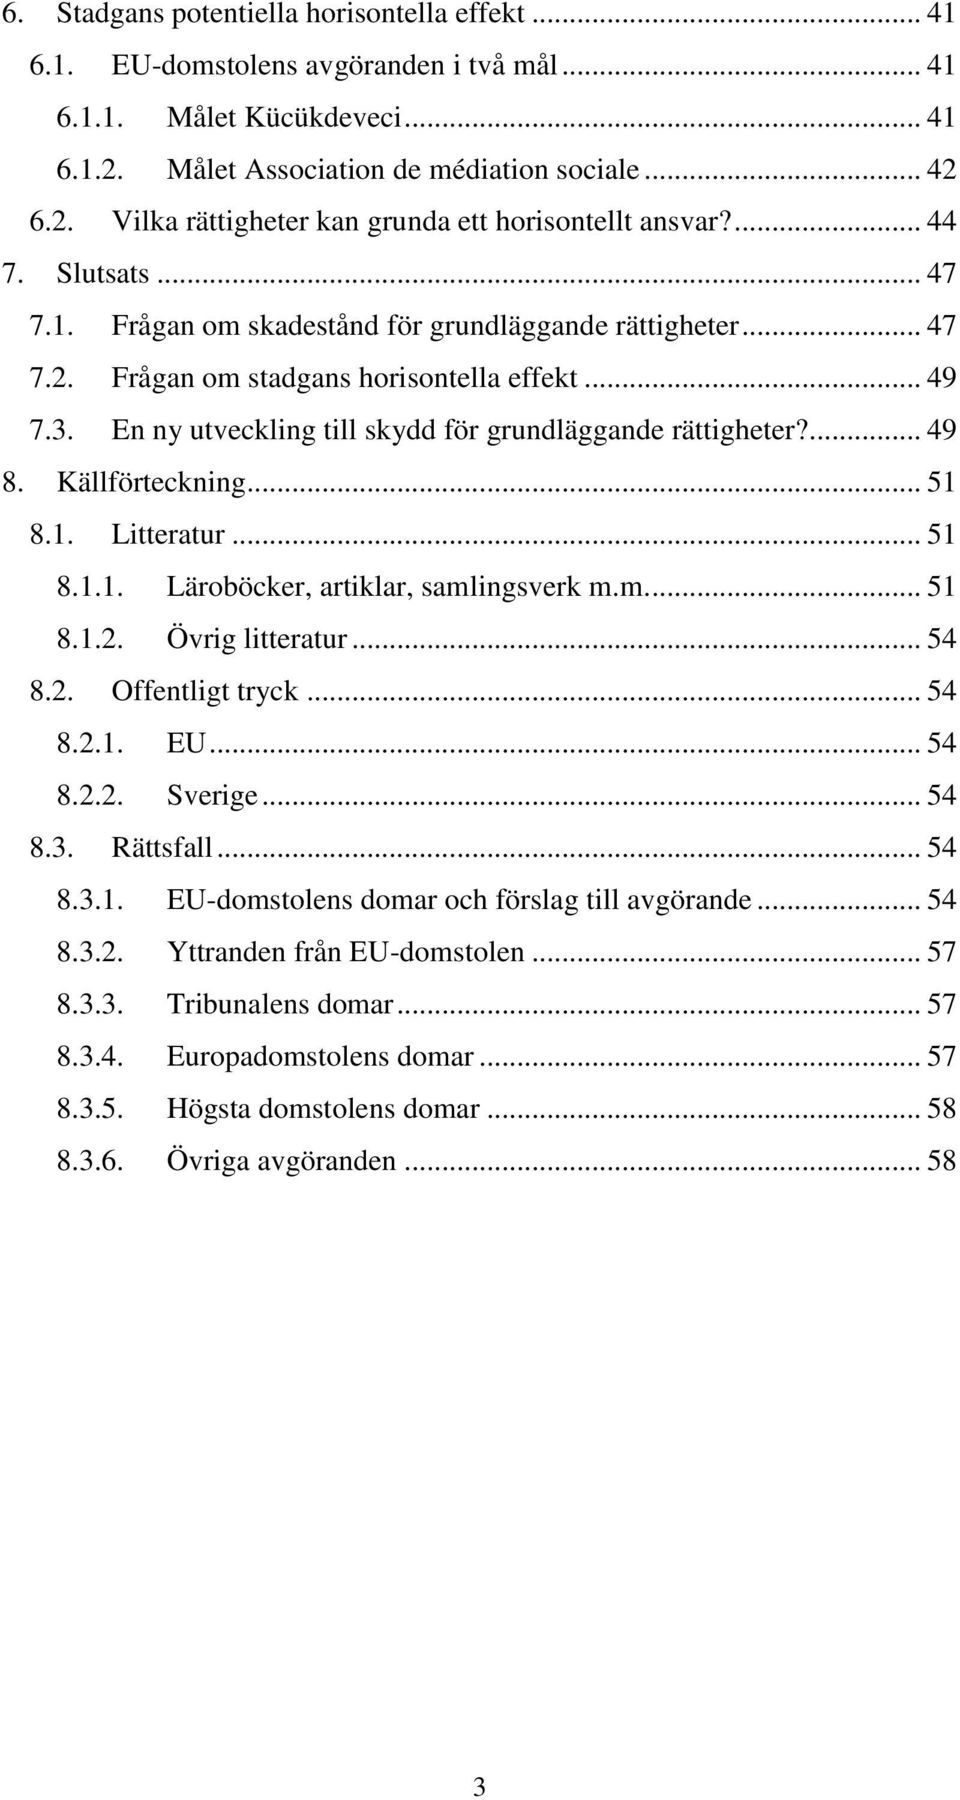 ... 49 8. Källförteckning... 51 8.1. Litteratur... 51 8.1.1. Läroböcker, artiklar, samlingsverk m.m.... 51 8.1.2. Övrig litteratur... 54 8.2. Offentligt tryck... 54 8.2.1. EU... 54 8.2.2. Sverige.